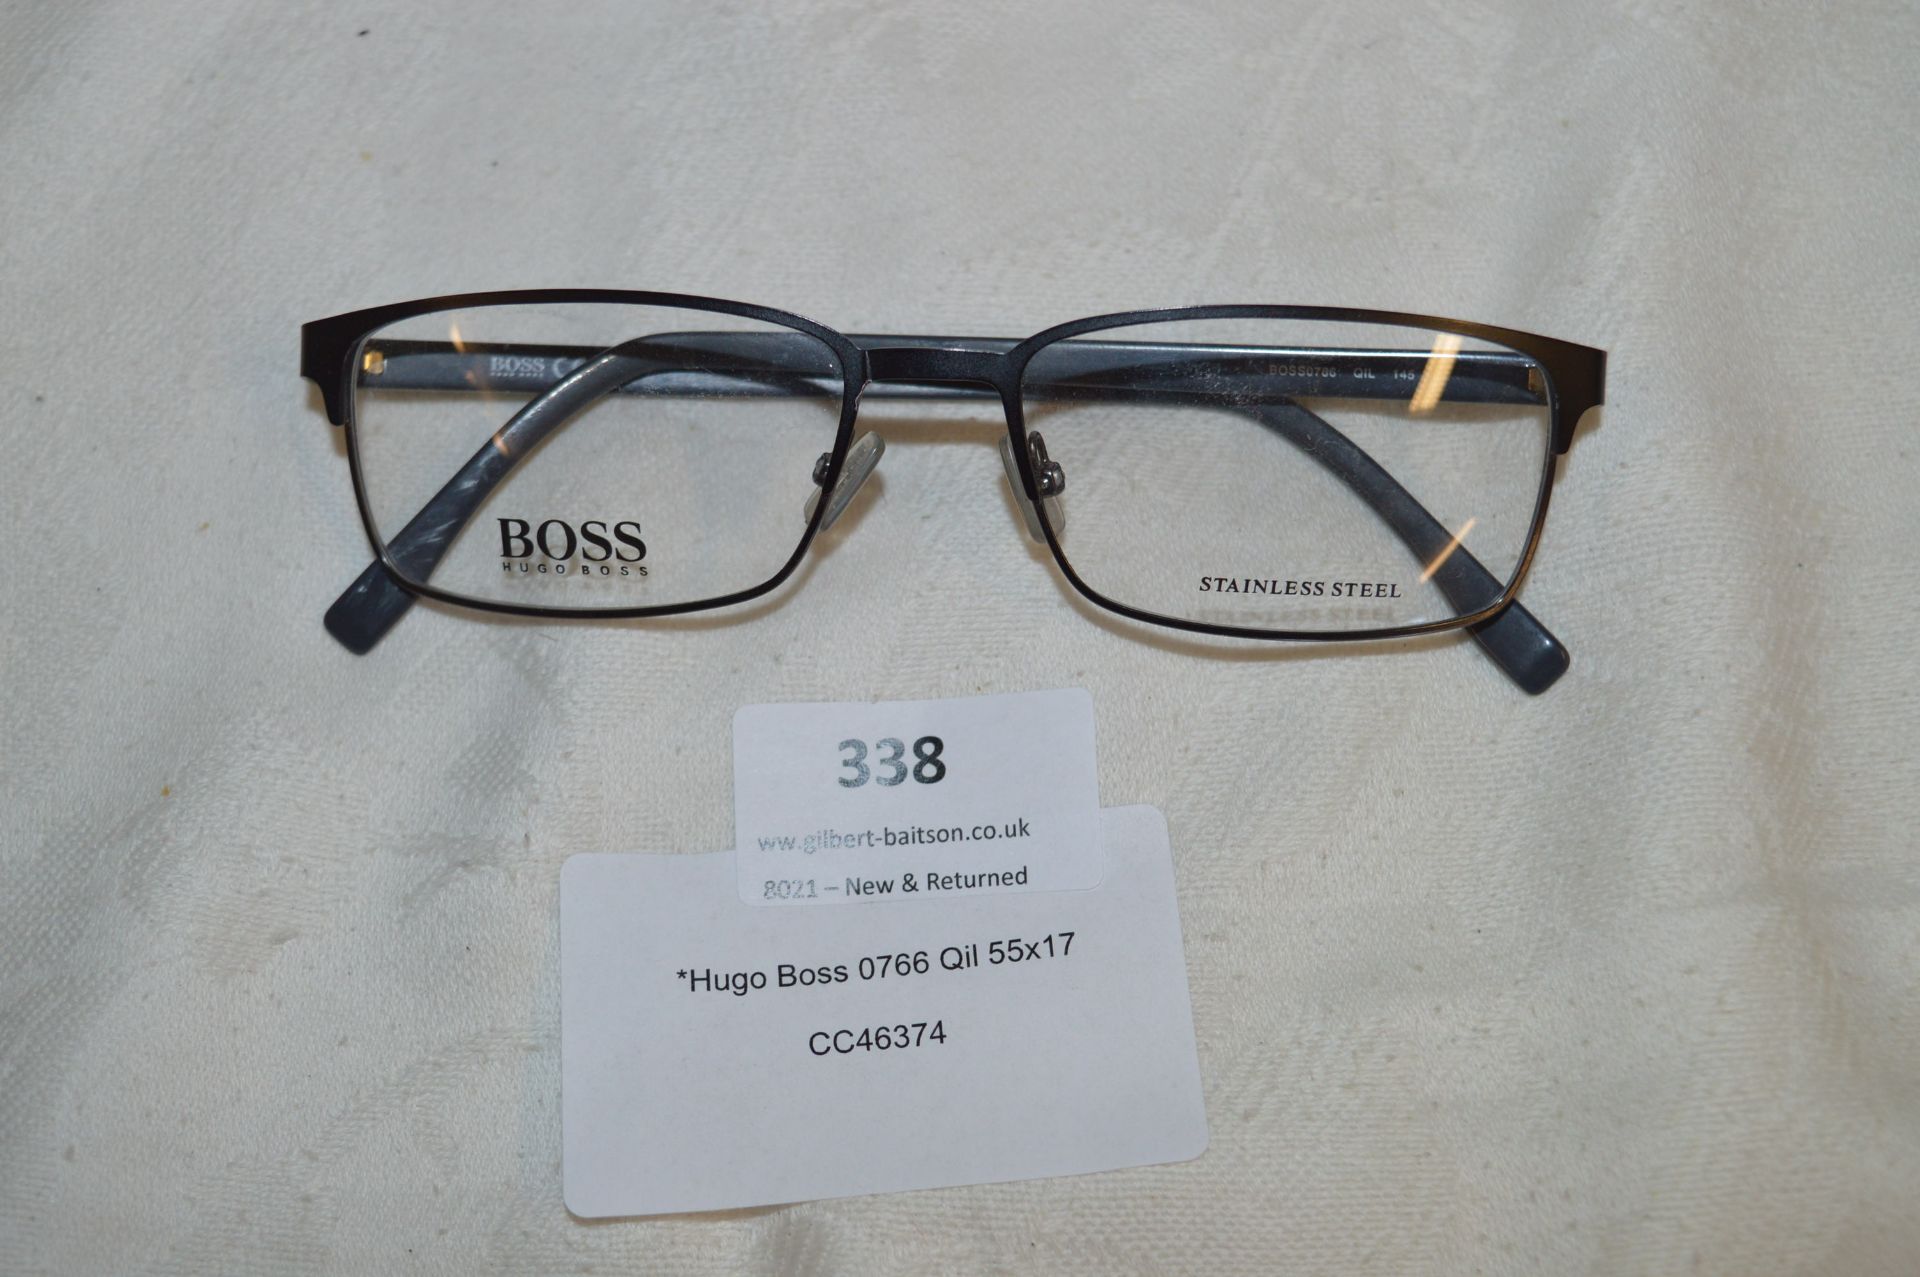 *Hugo Boss Spectacles